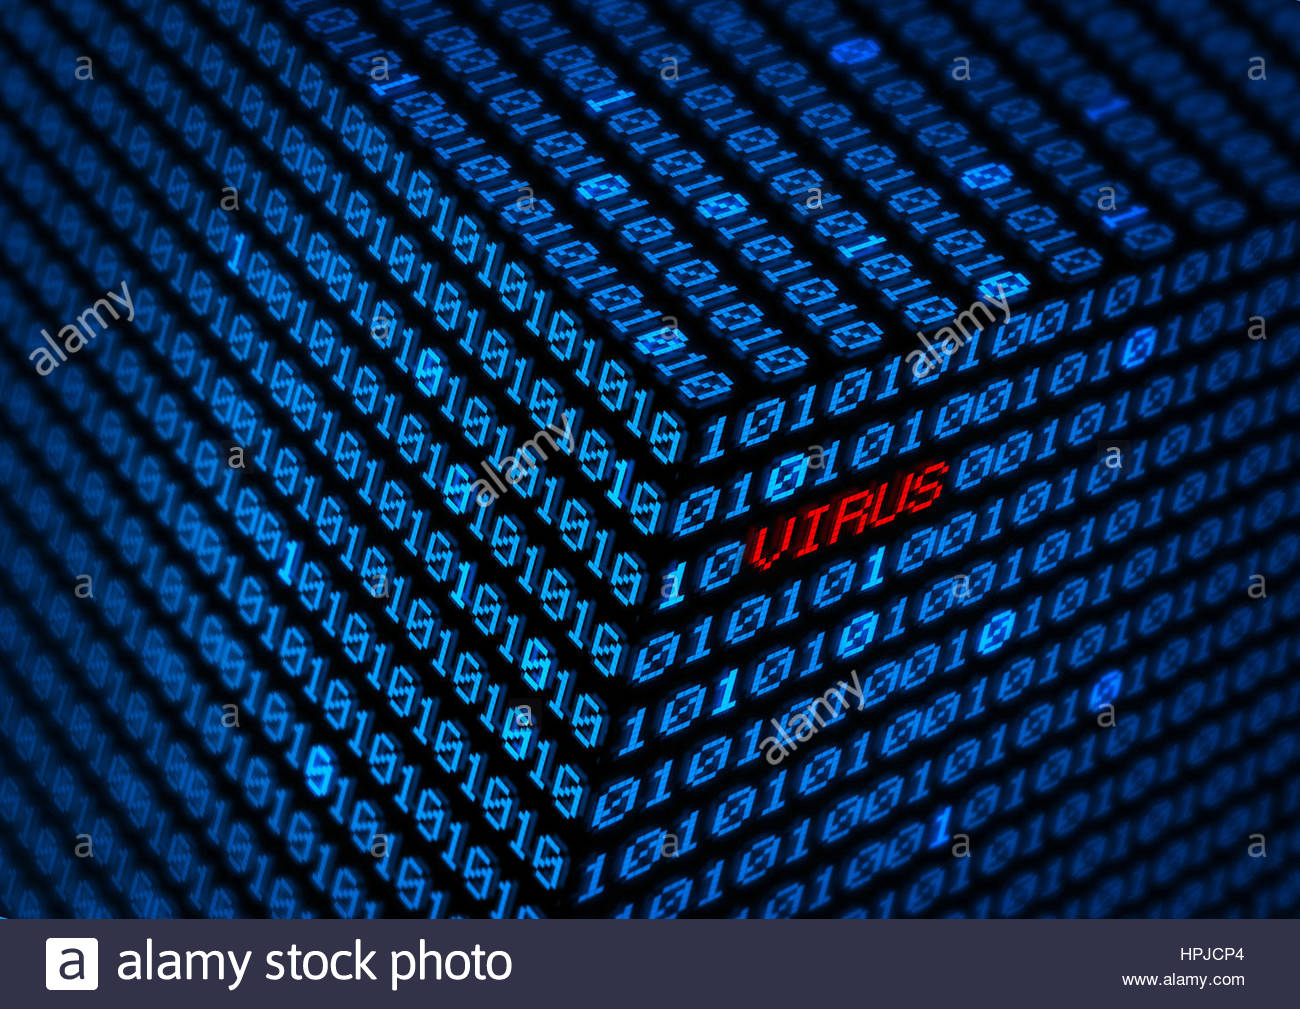 Puter Virus Concept Binary Code Background Stock Photo